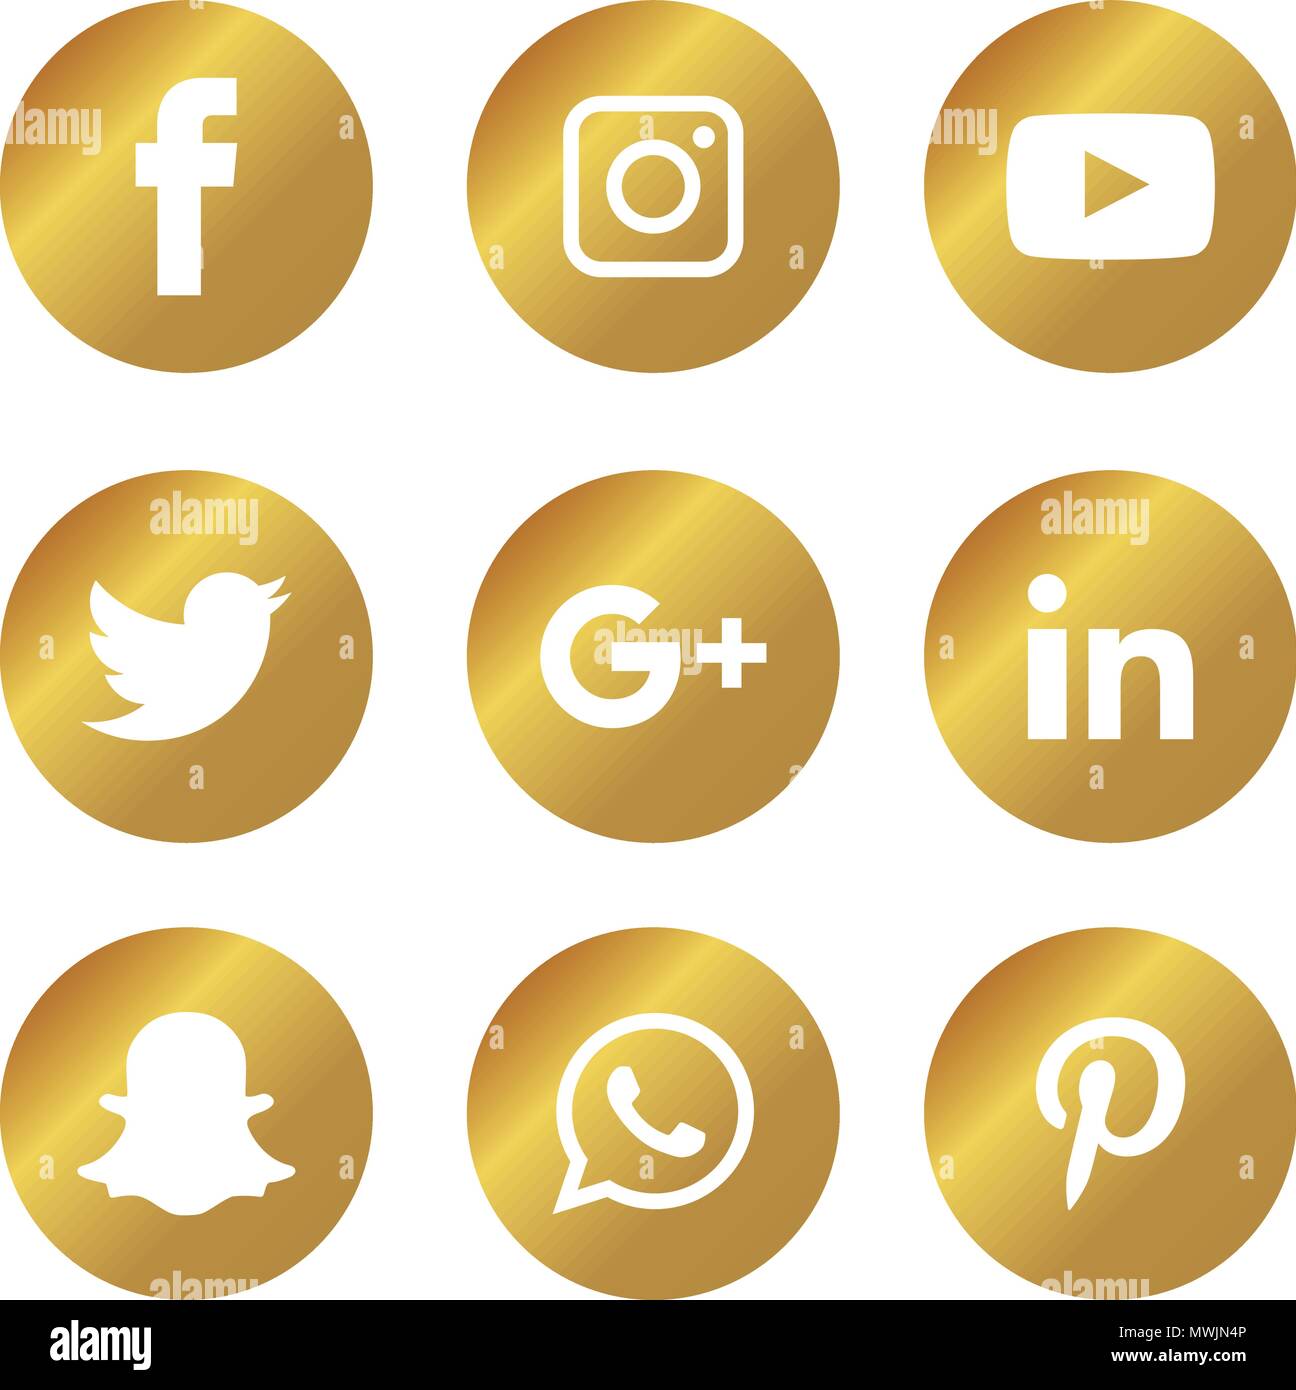 Social media Icons einstellen. Logo Vektor Illustrator. Facebook, Instagram, Whatsapp, Stock Vektor